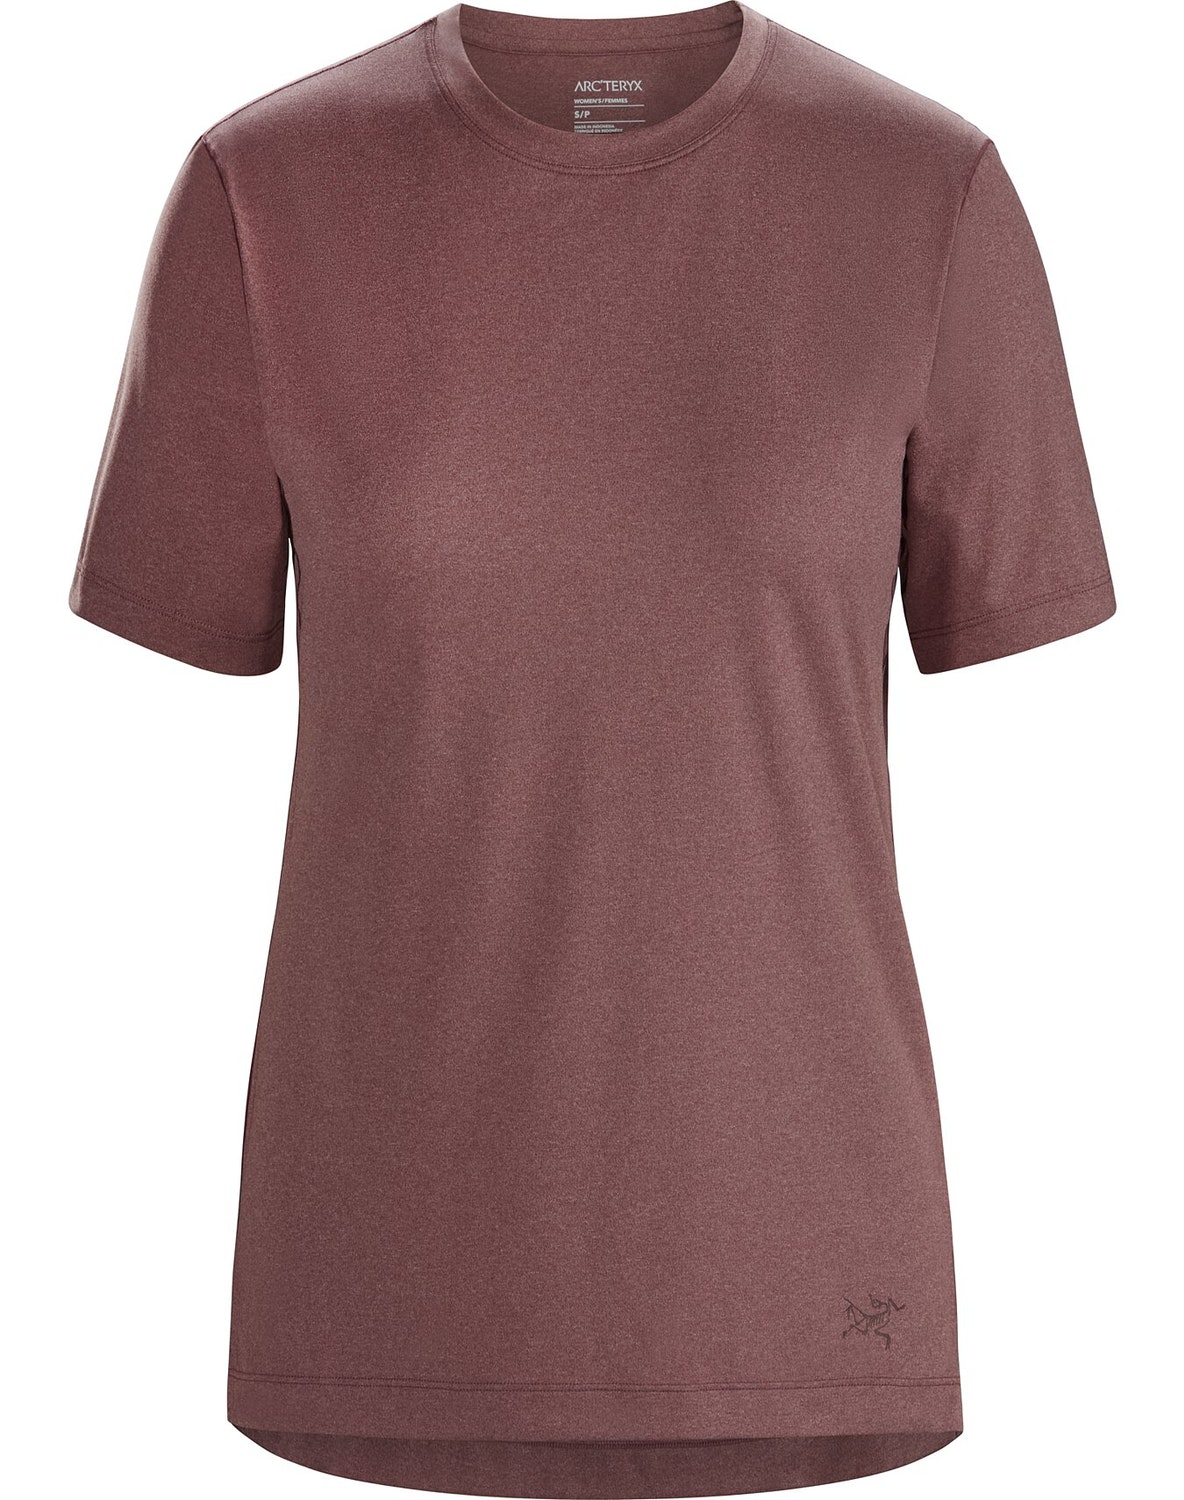 T-shirt Arc'teryx Remige Donna Bordeaux - IT-7659197